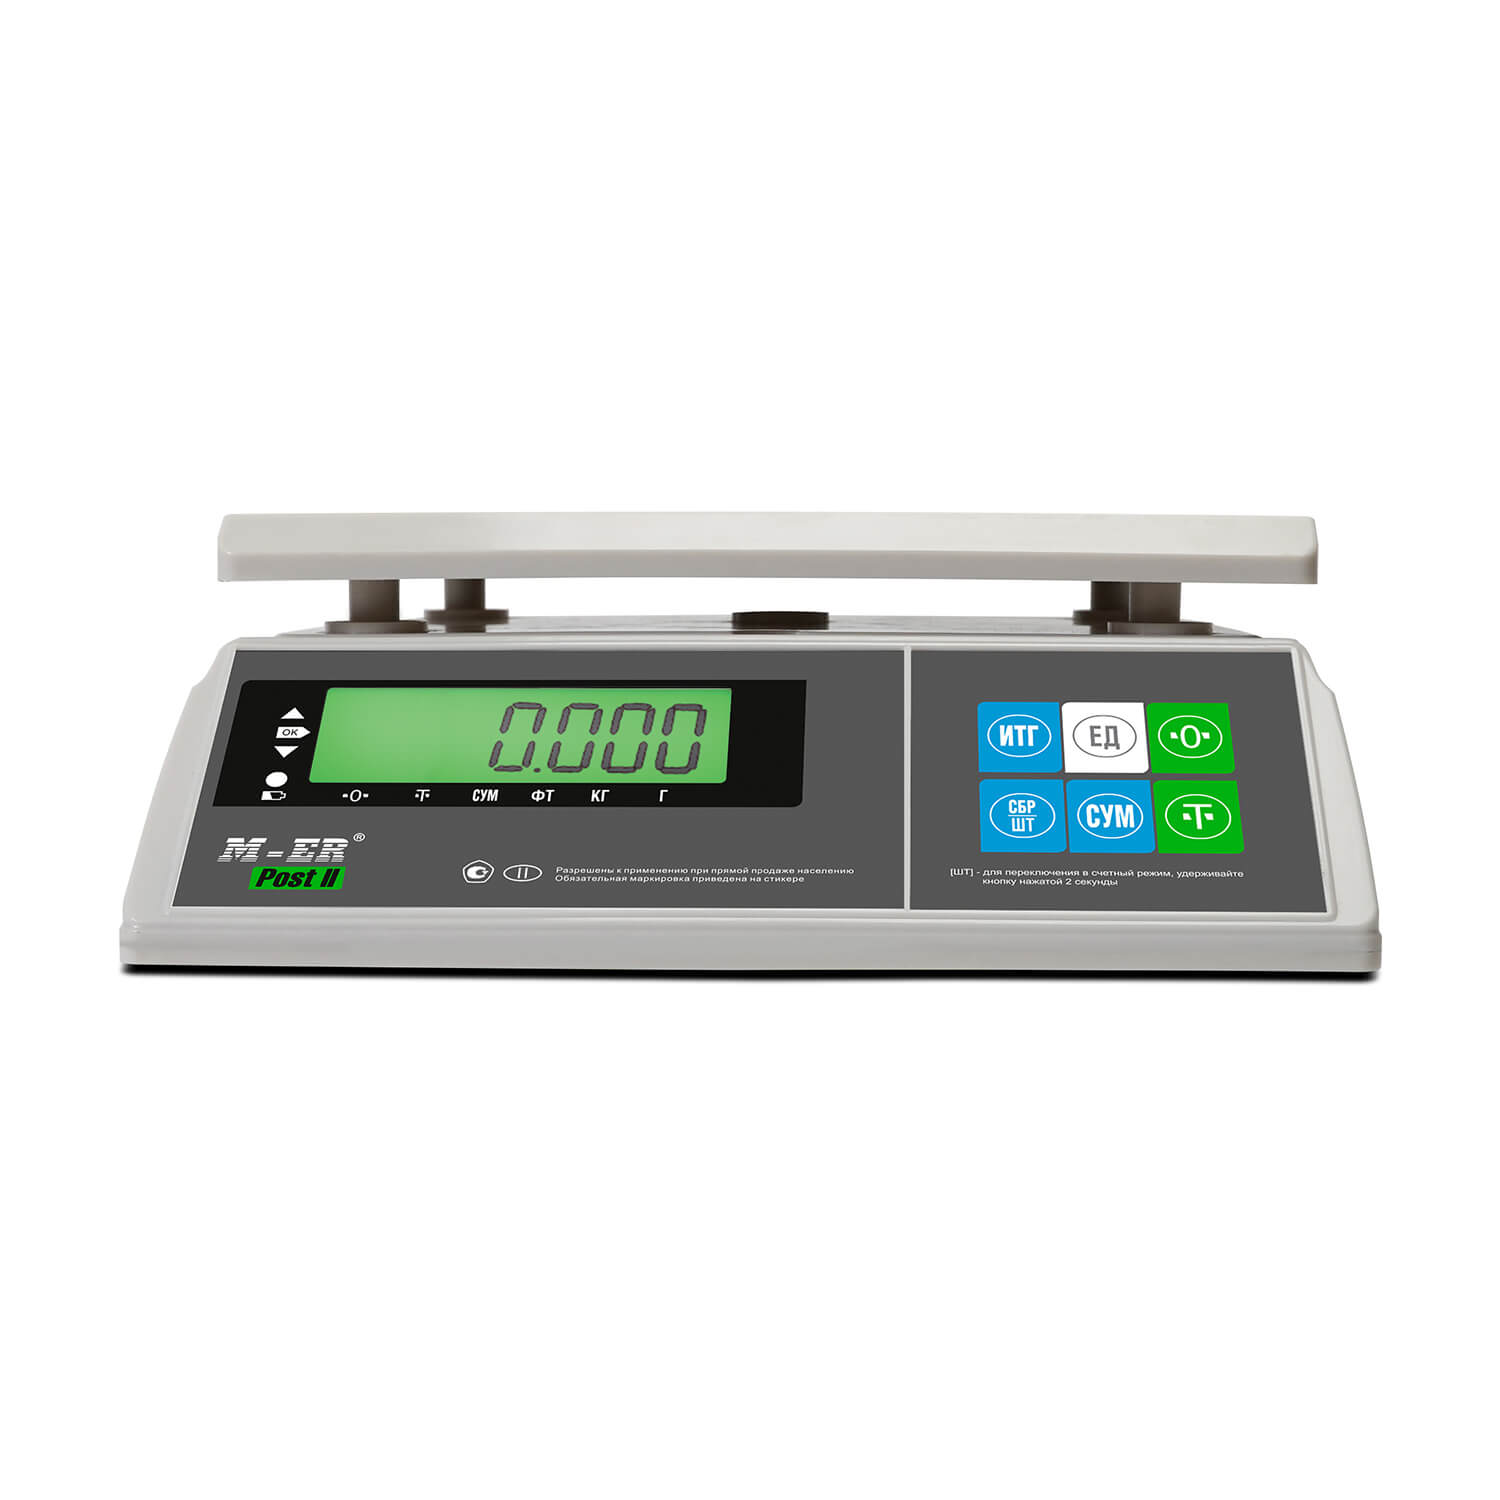 Порционные весы M-ER 326 AFU-15.1 "Post II" LCD MERTECH 3060 Весы #7